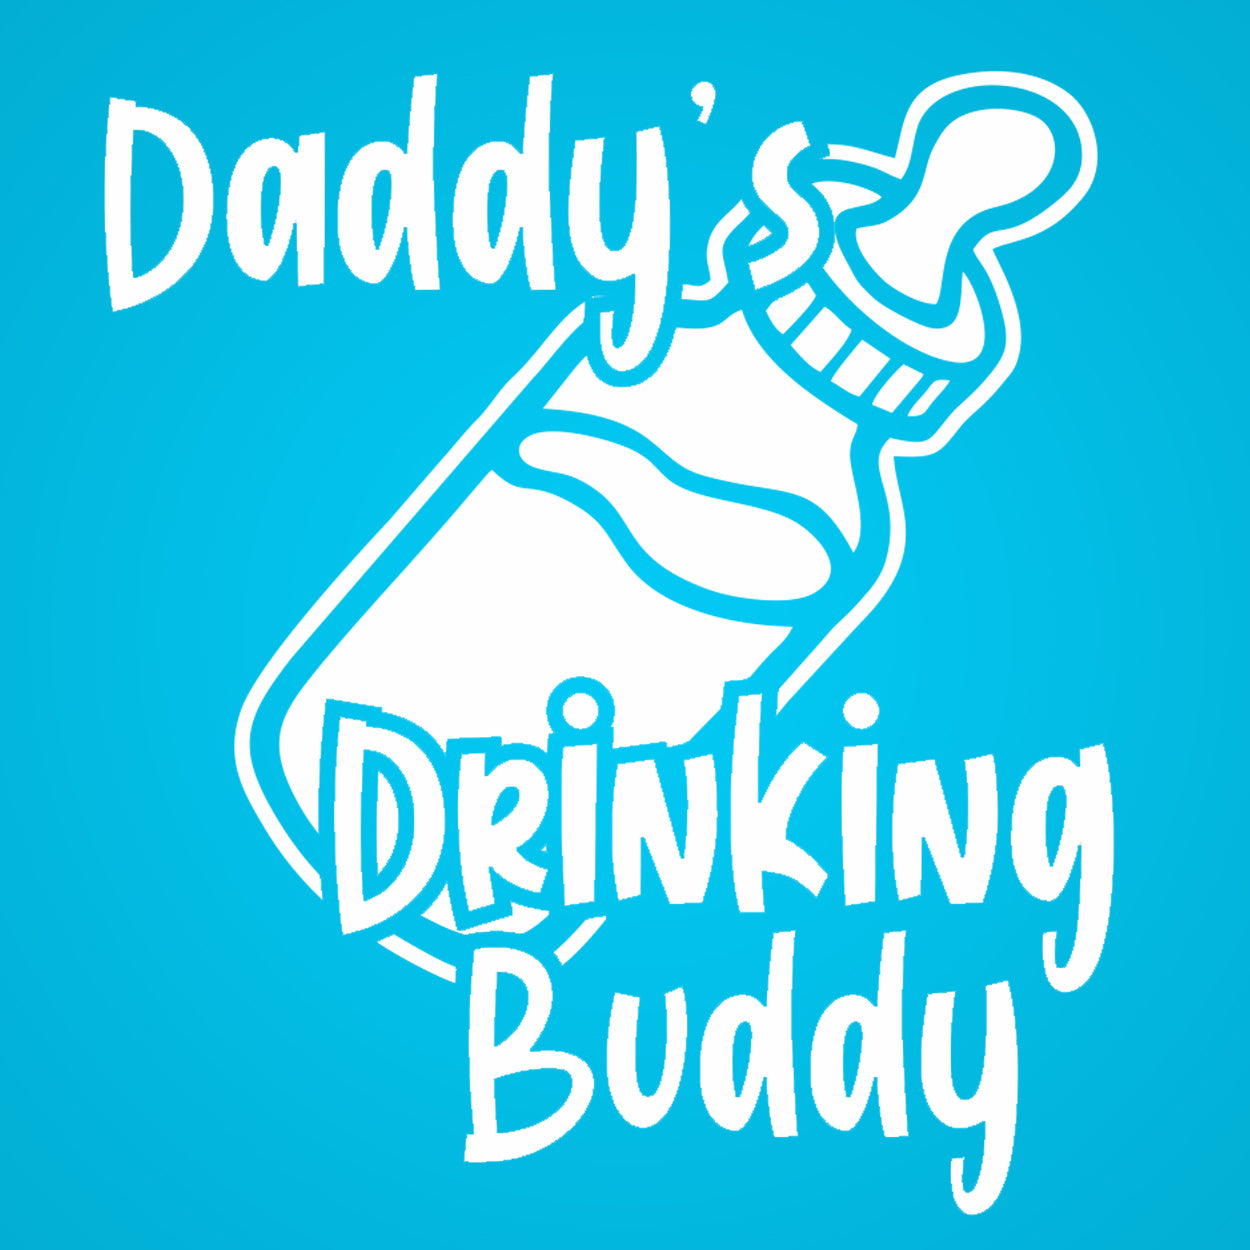 Daddys Drinking Buddy Tshirt - Donkey Tees